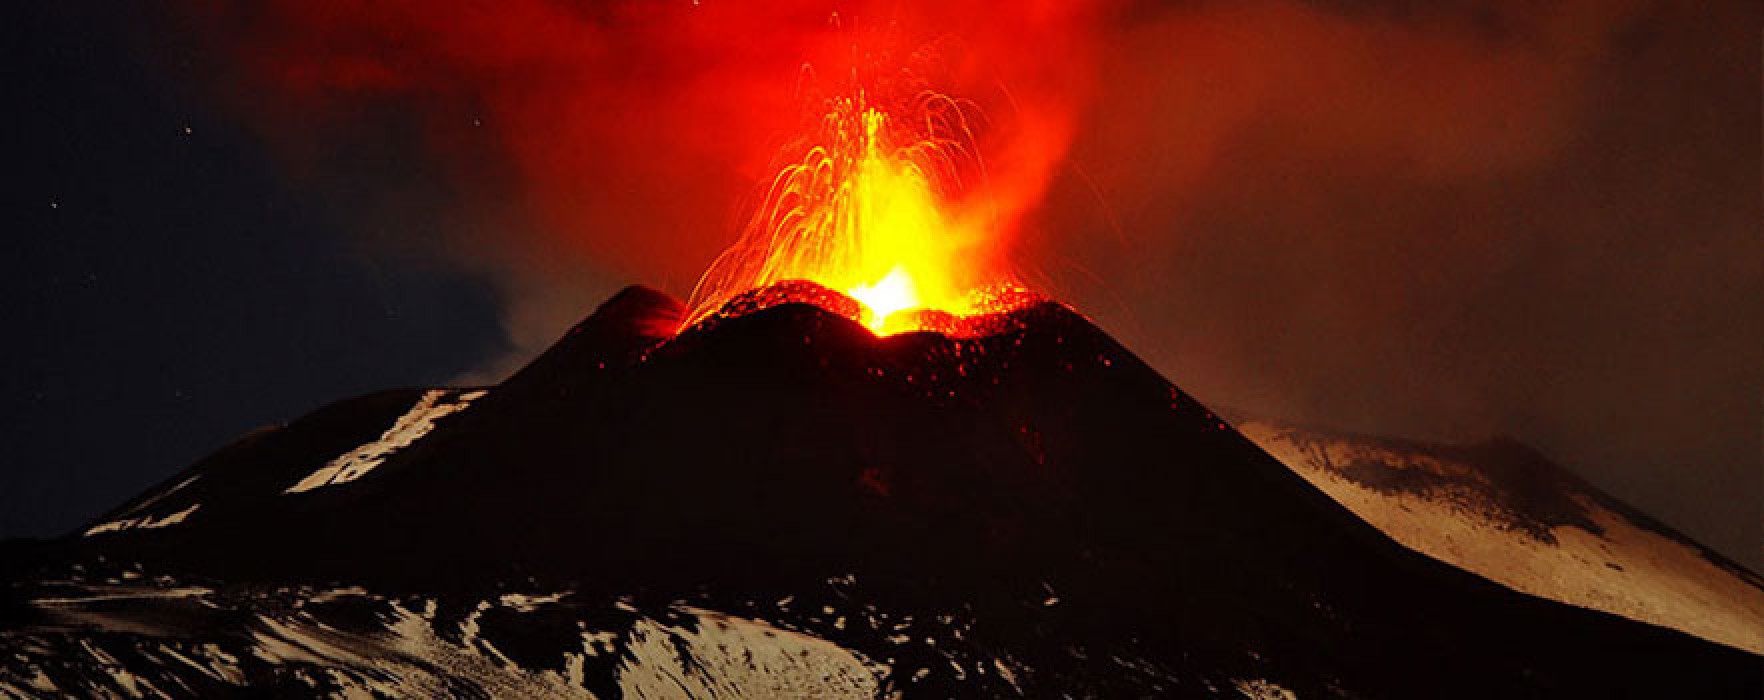 Yeryüzündeki Üstün Yaratılış Örneği: Volkanik Faaliyetler